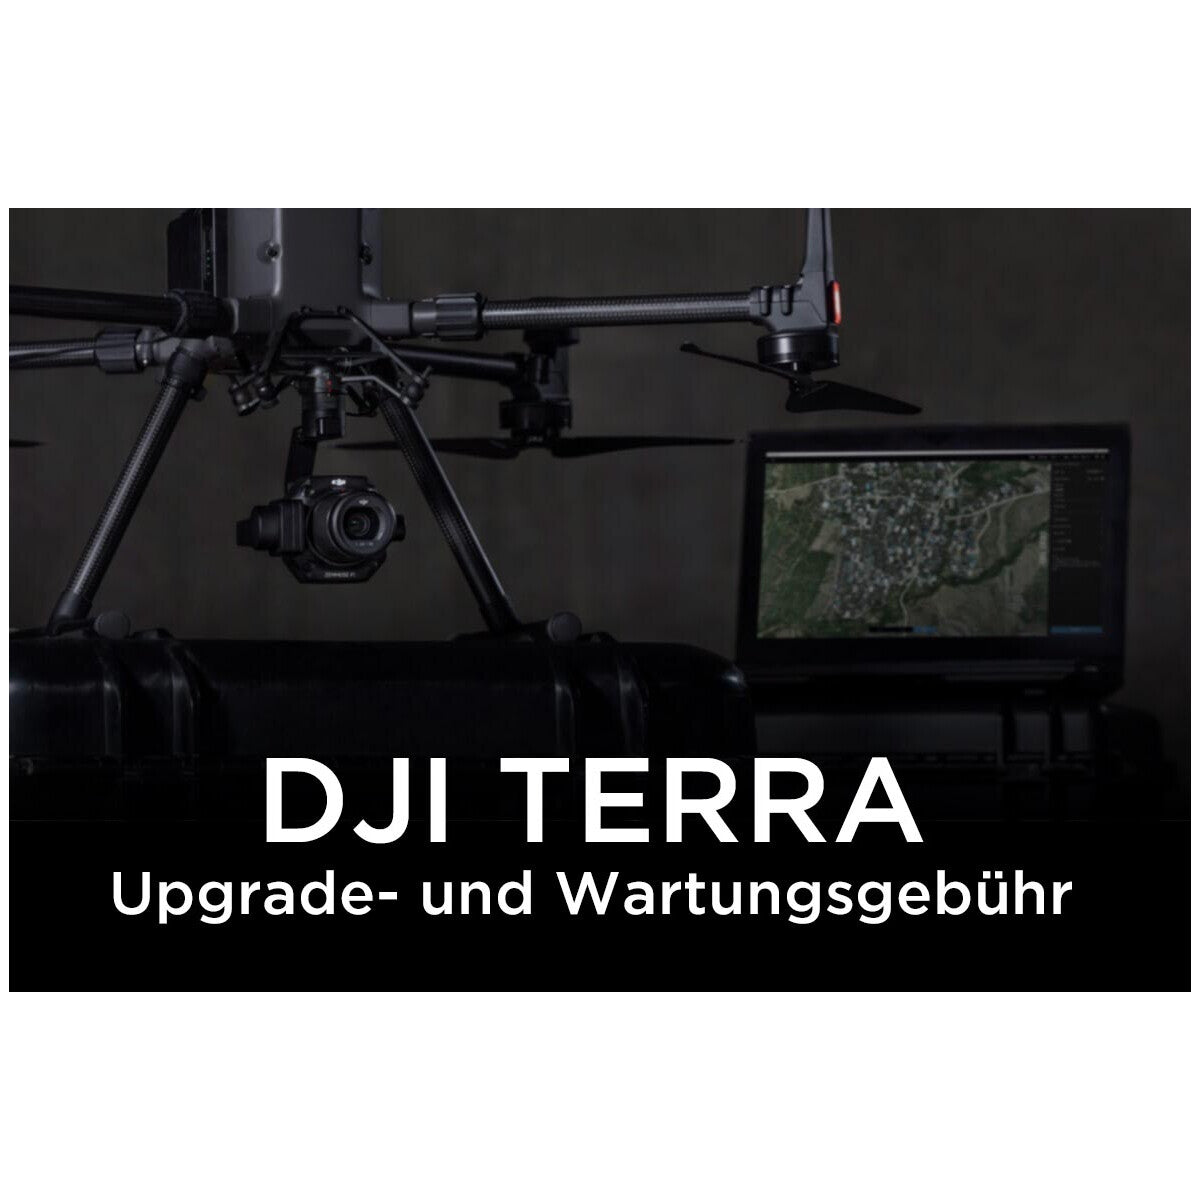 DJI Terra Upgrade- und Wartungsgebühr (Pro, 1 Jahr, 3 Geräte)